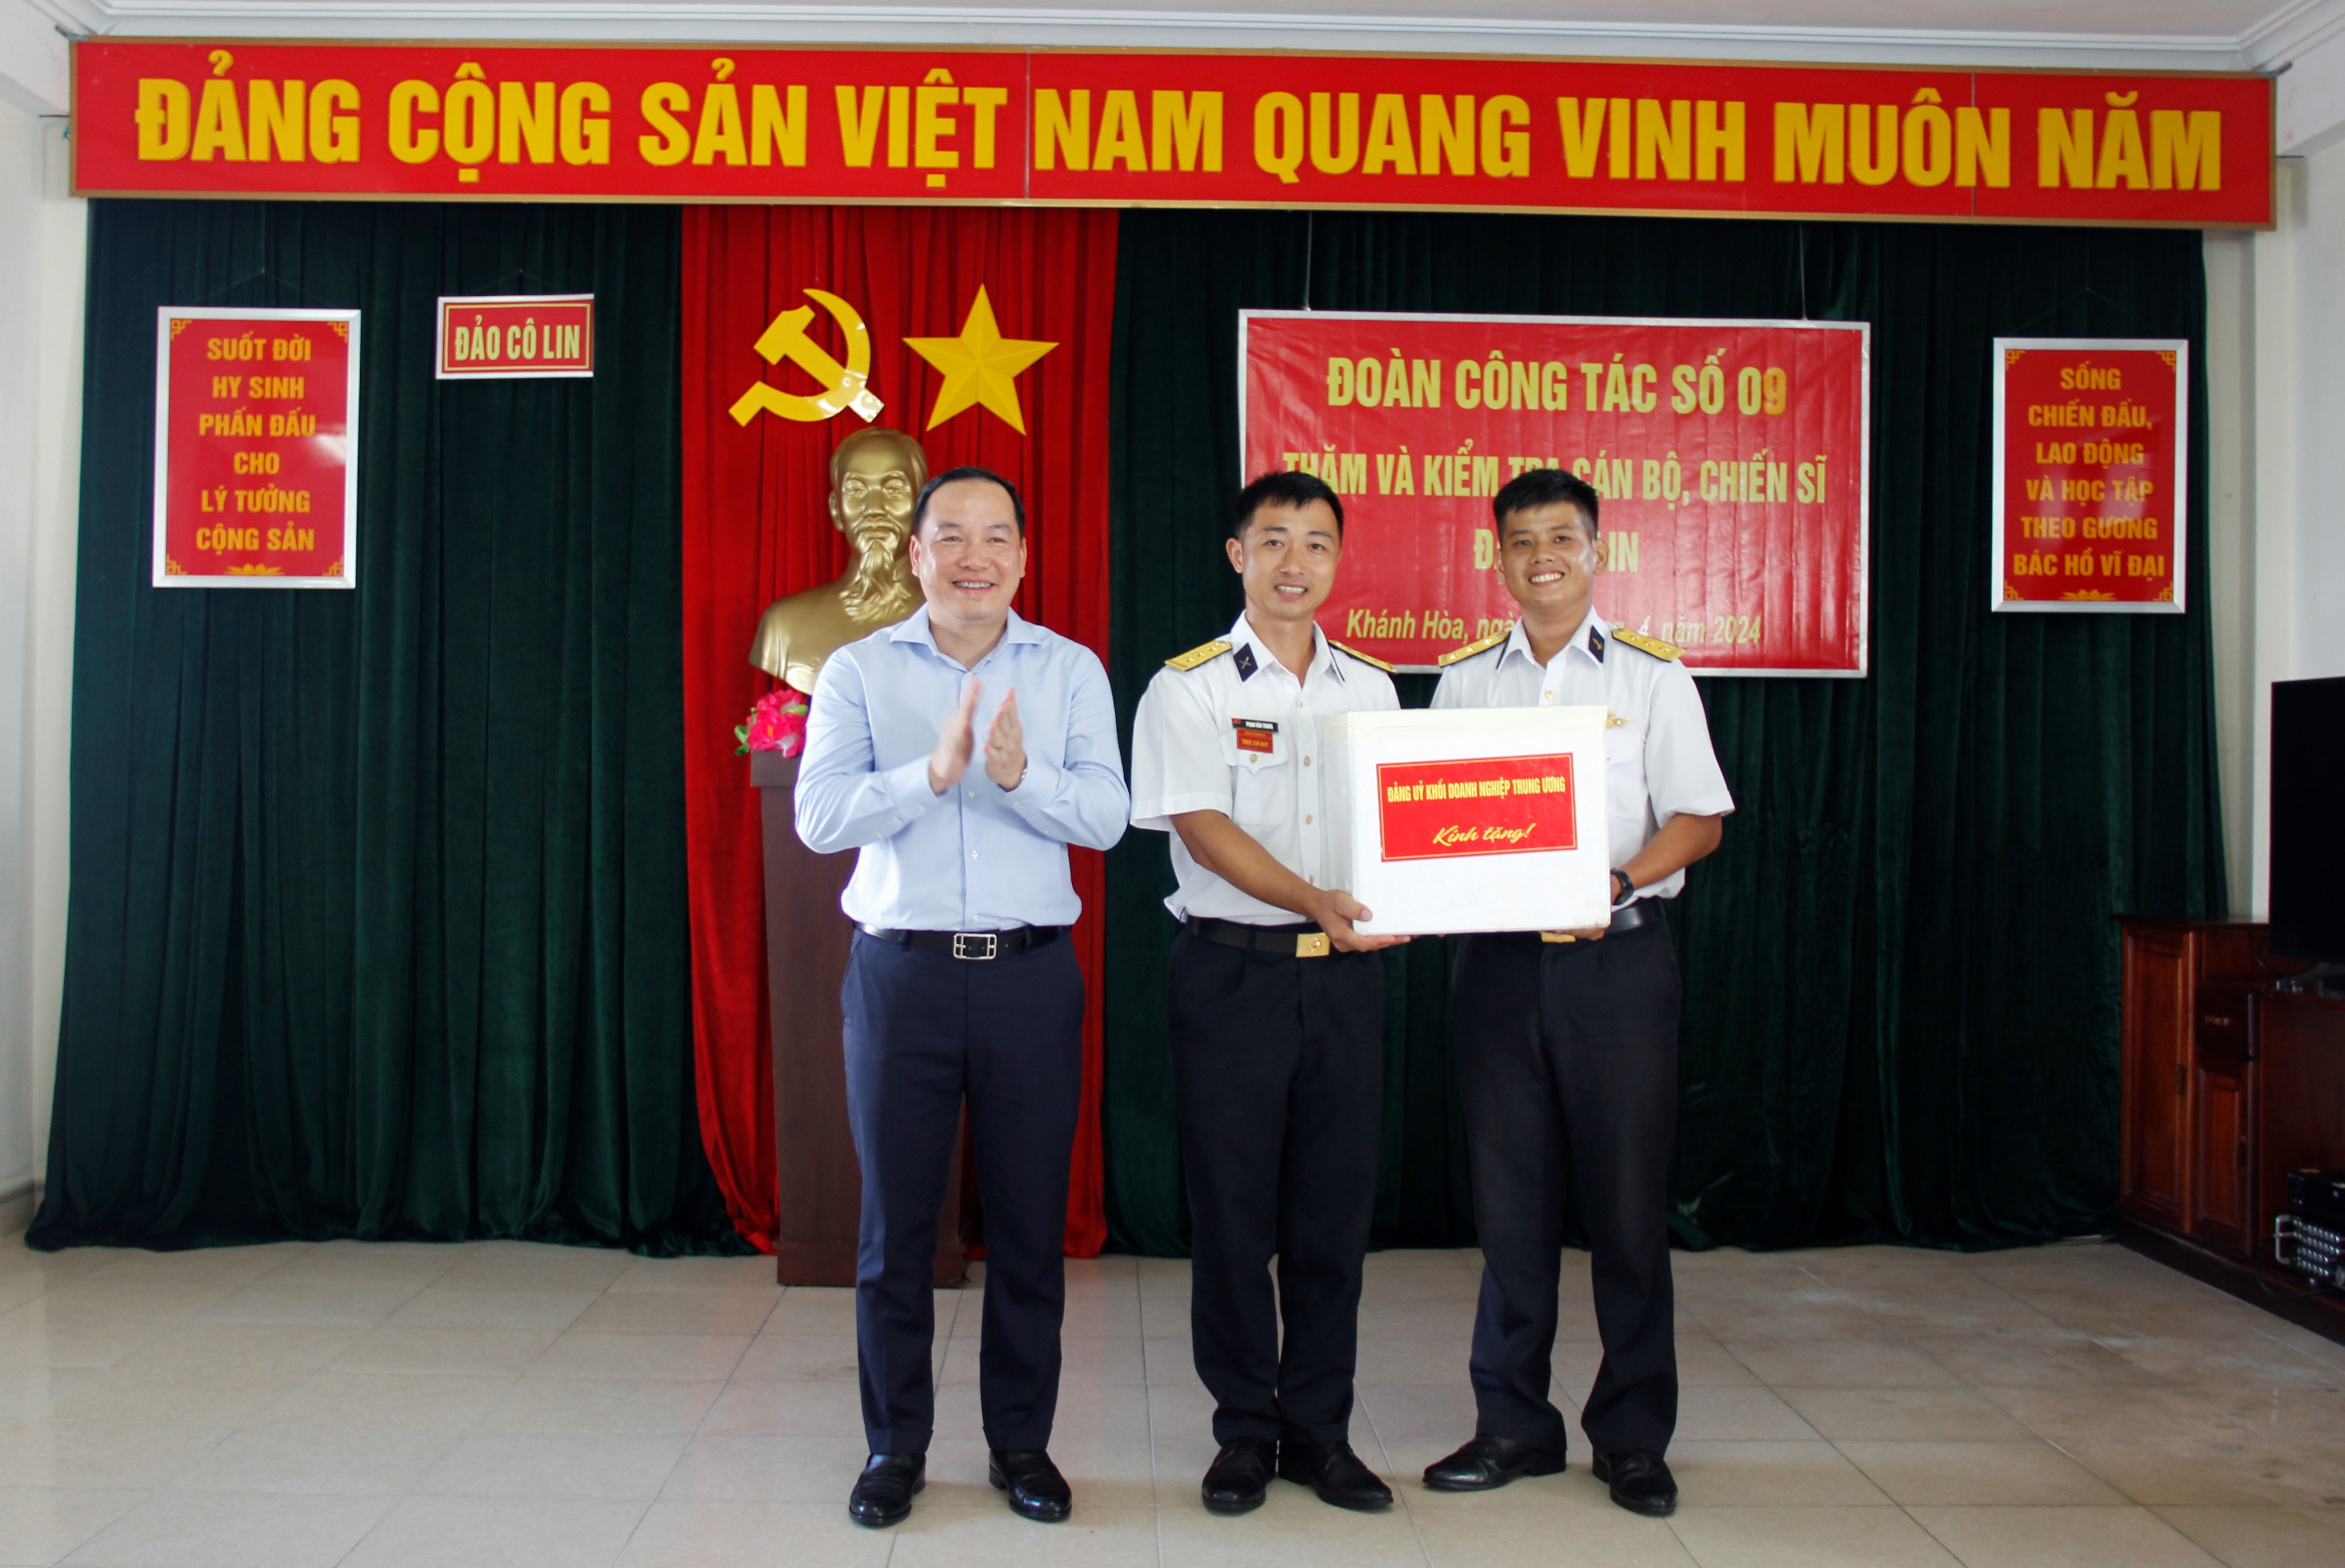 Đồng chí Hồ Xuân Trường – Phó Bí thư Đảng ủy Khối tặng quà cán bộ, chiến sỹ Đảo Cô Lin - quần đảo Trường Sa.